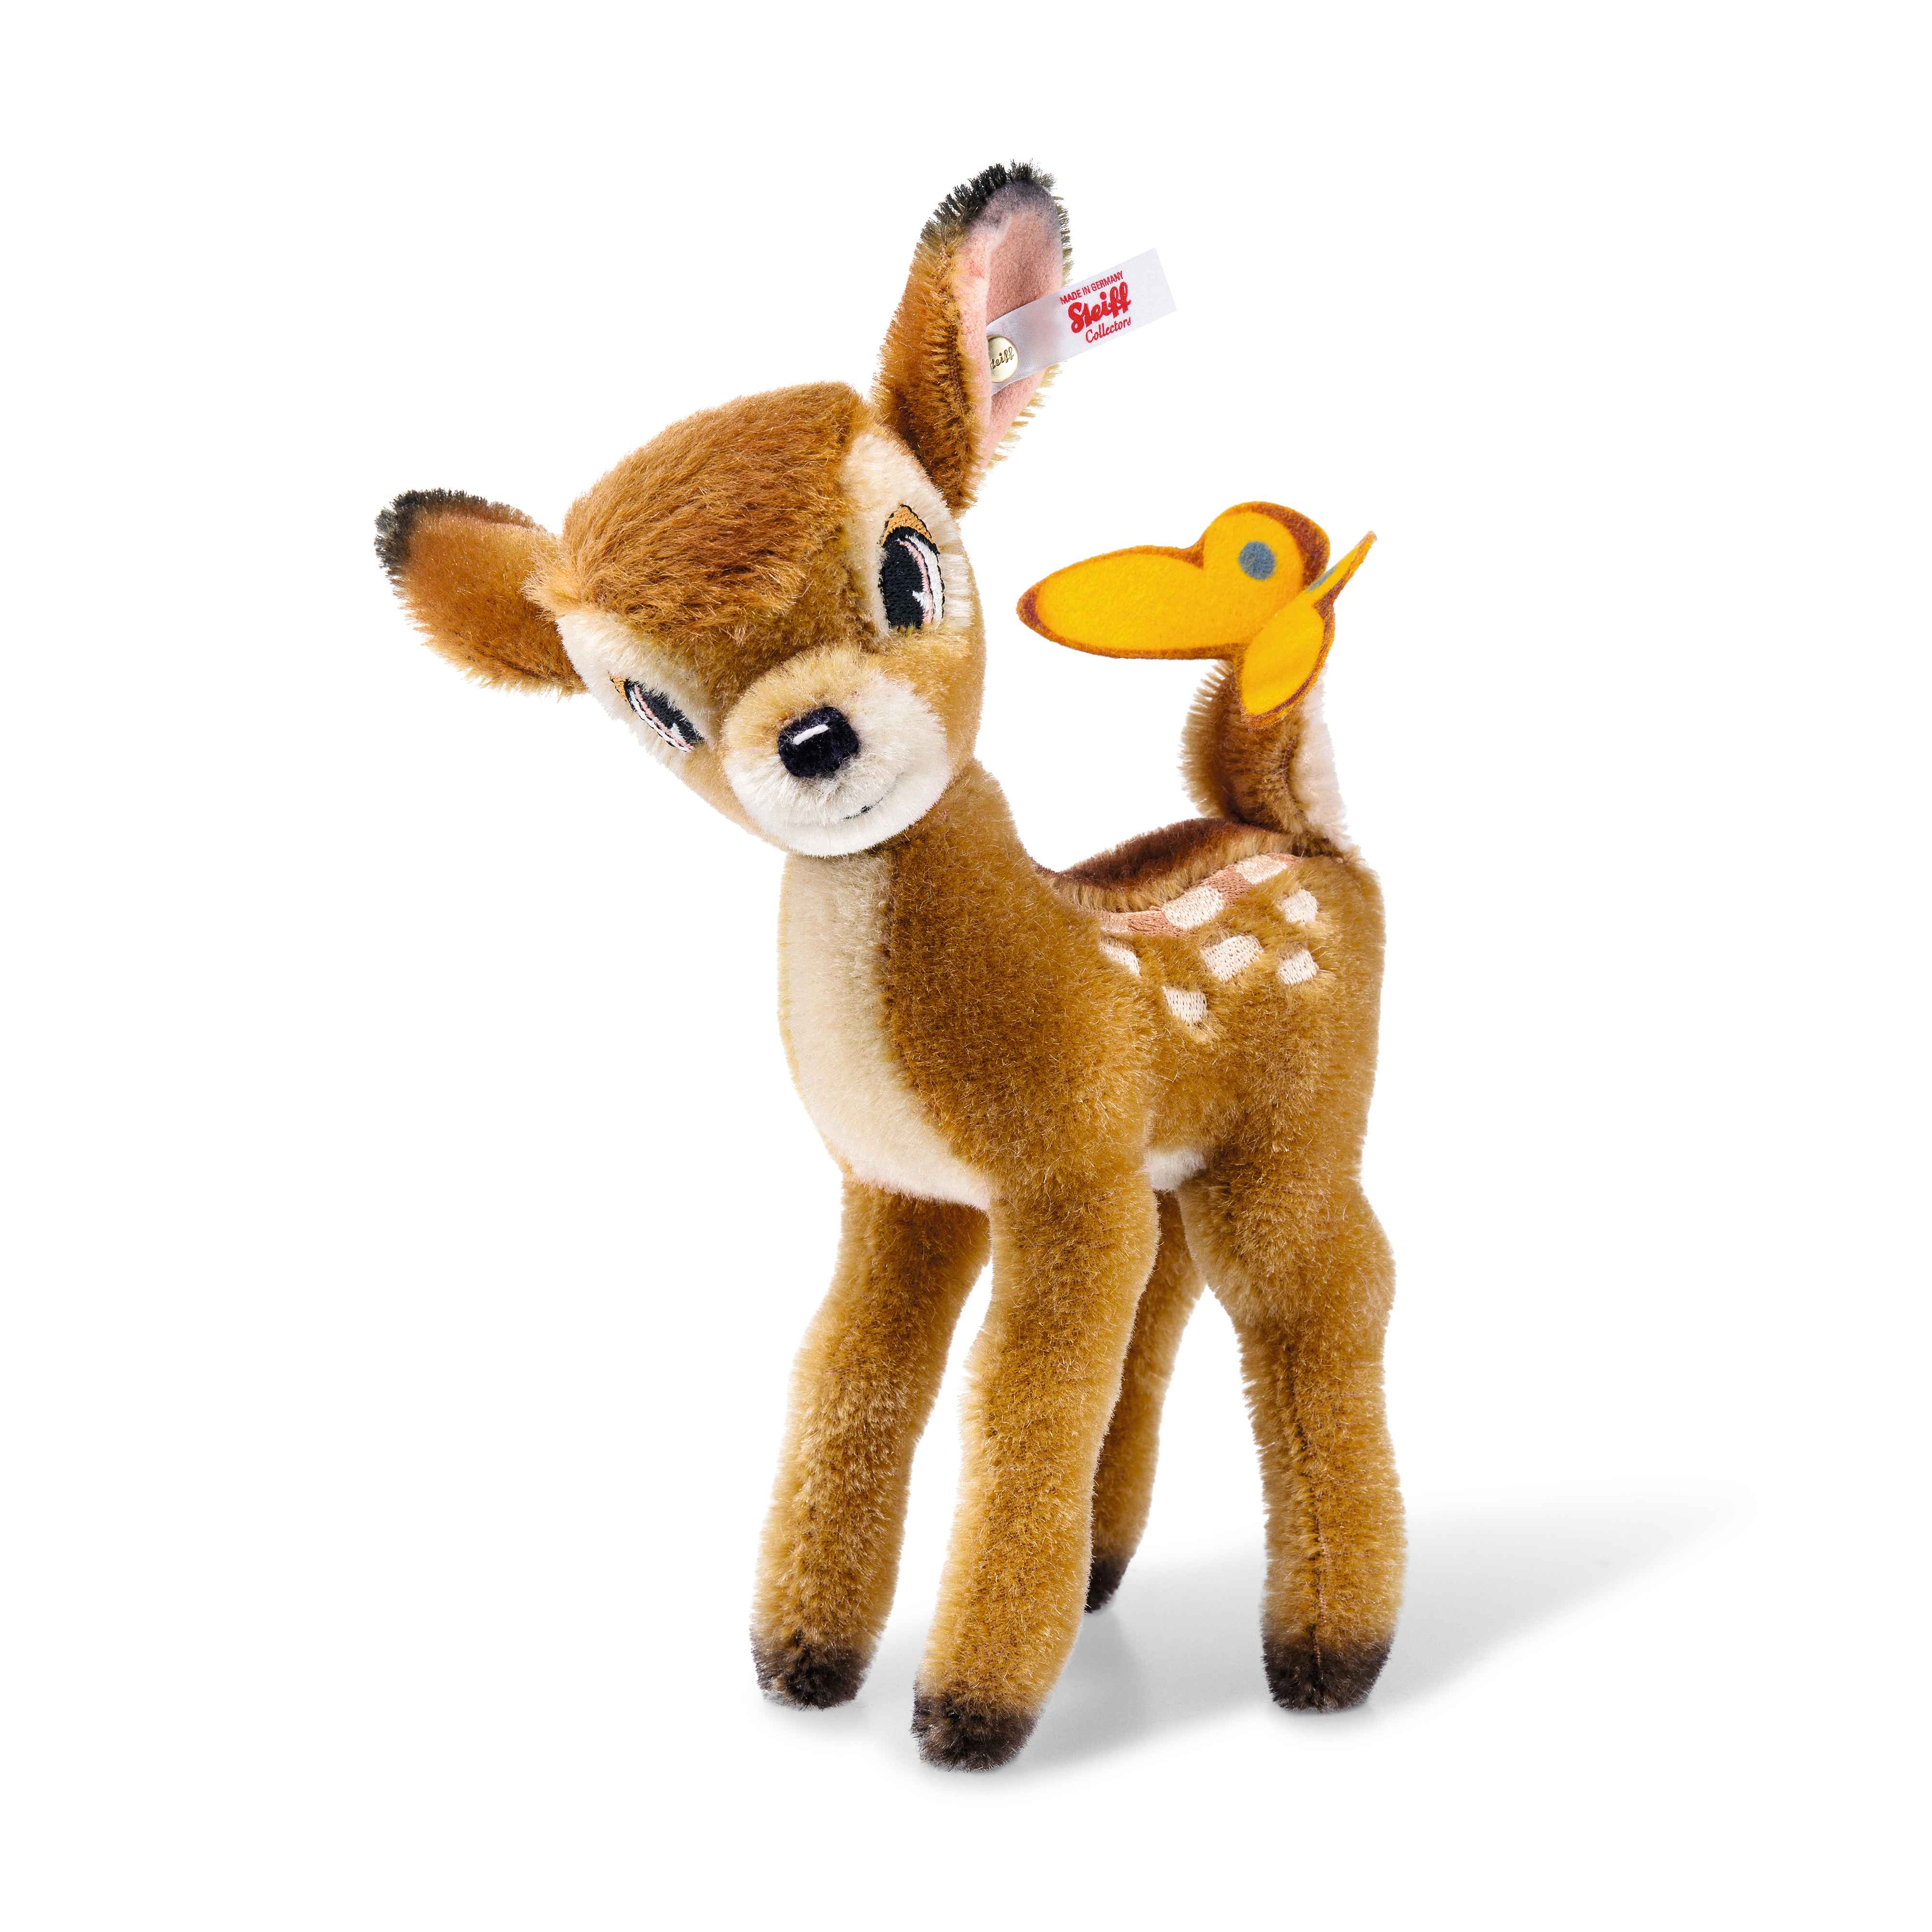 Sammler Edition 354656 Disney Bambi 20cm hellbraun stehend -Ausstellungsstück-